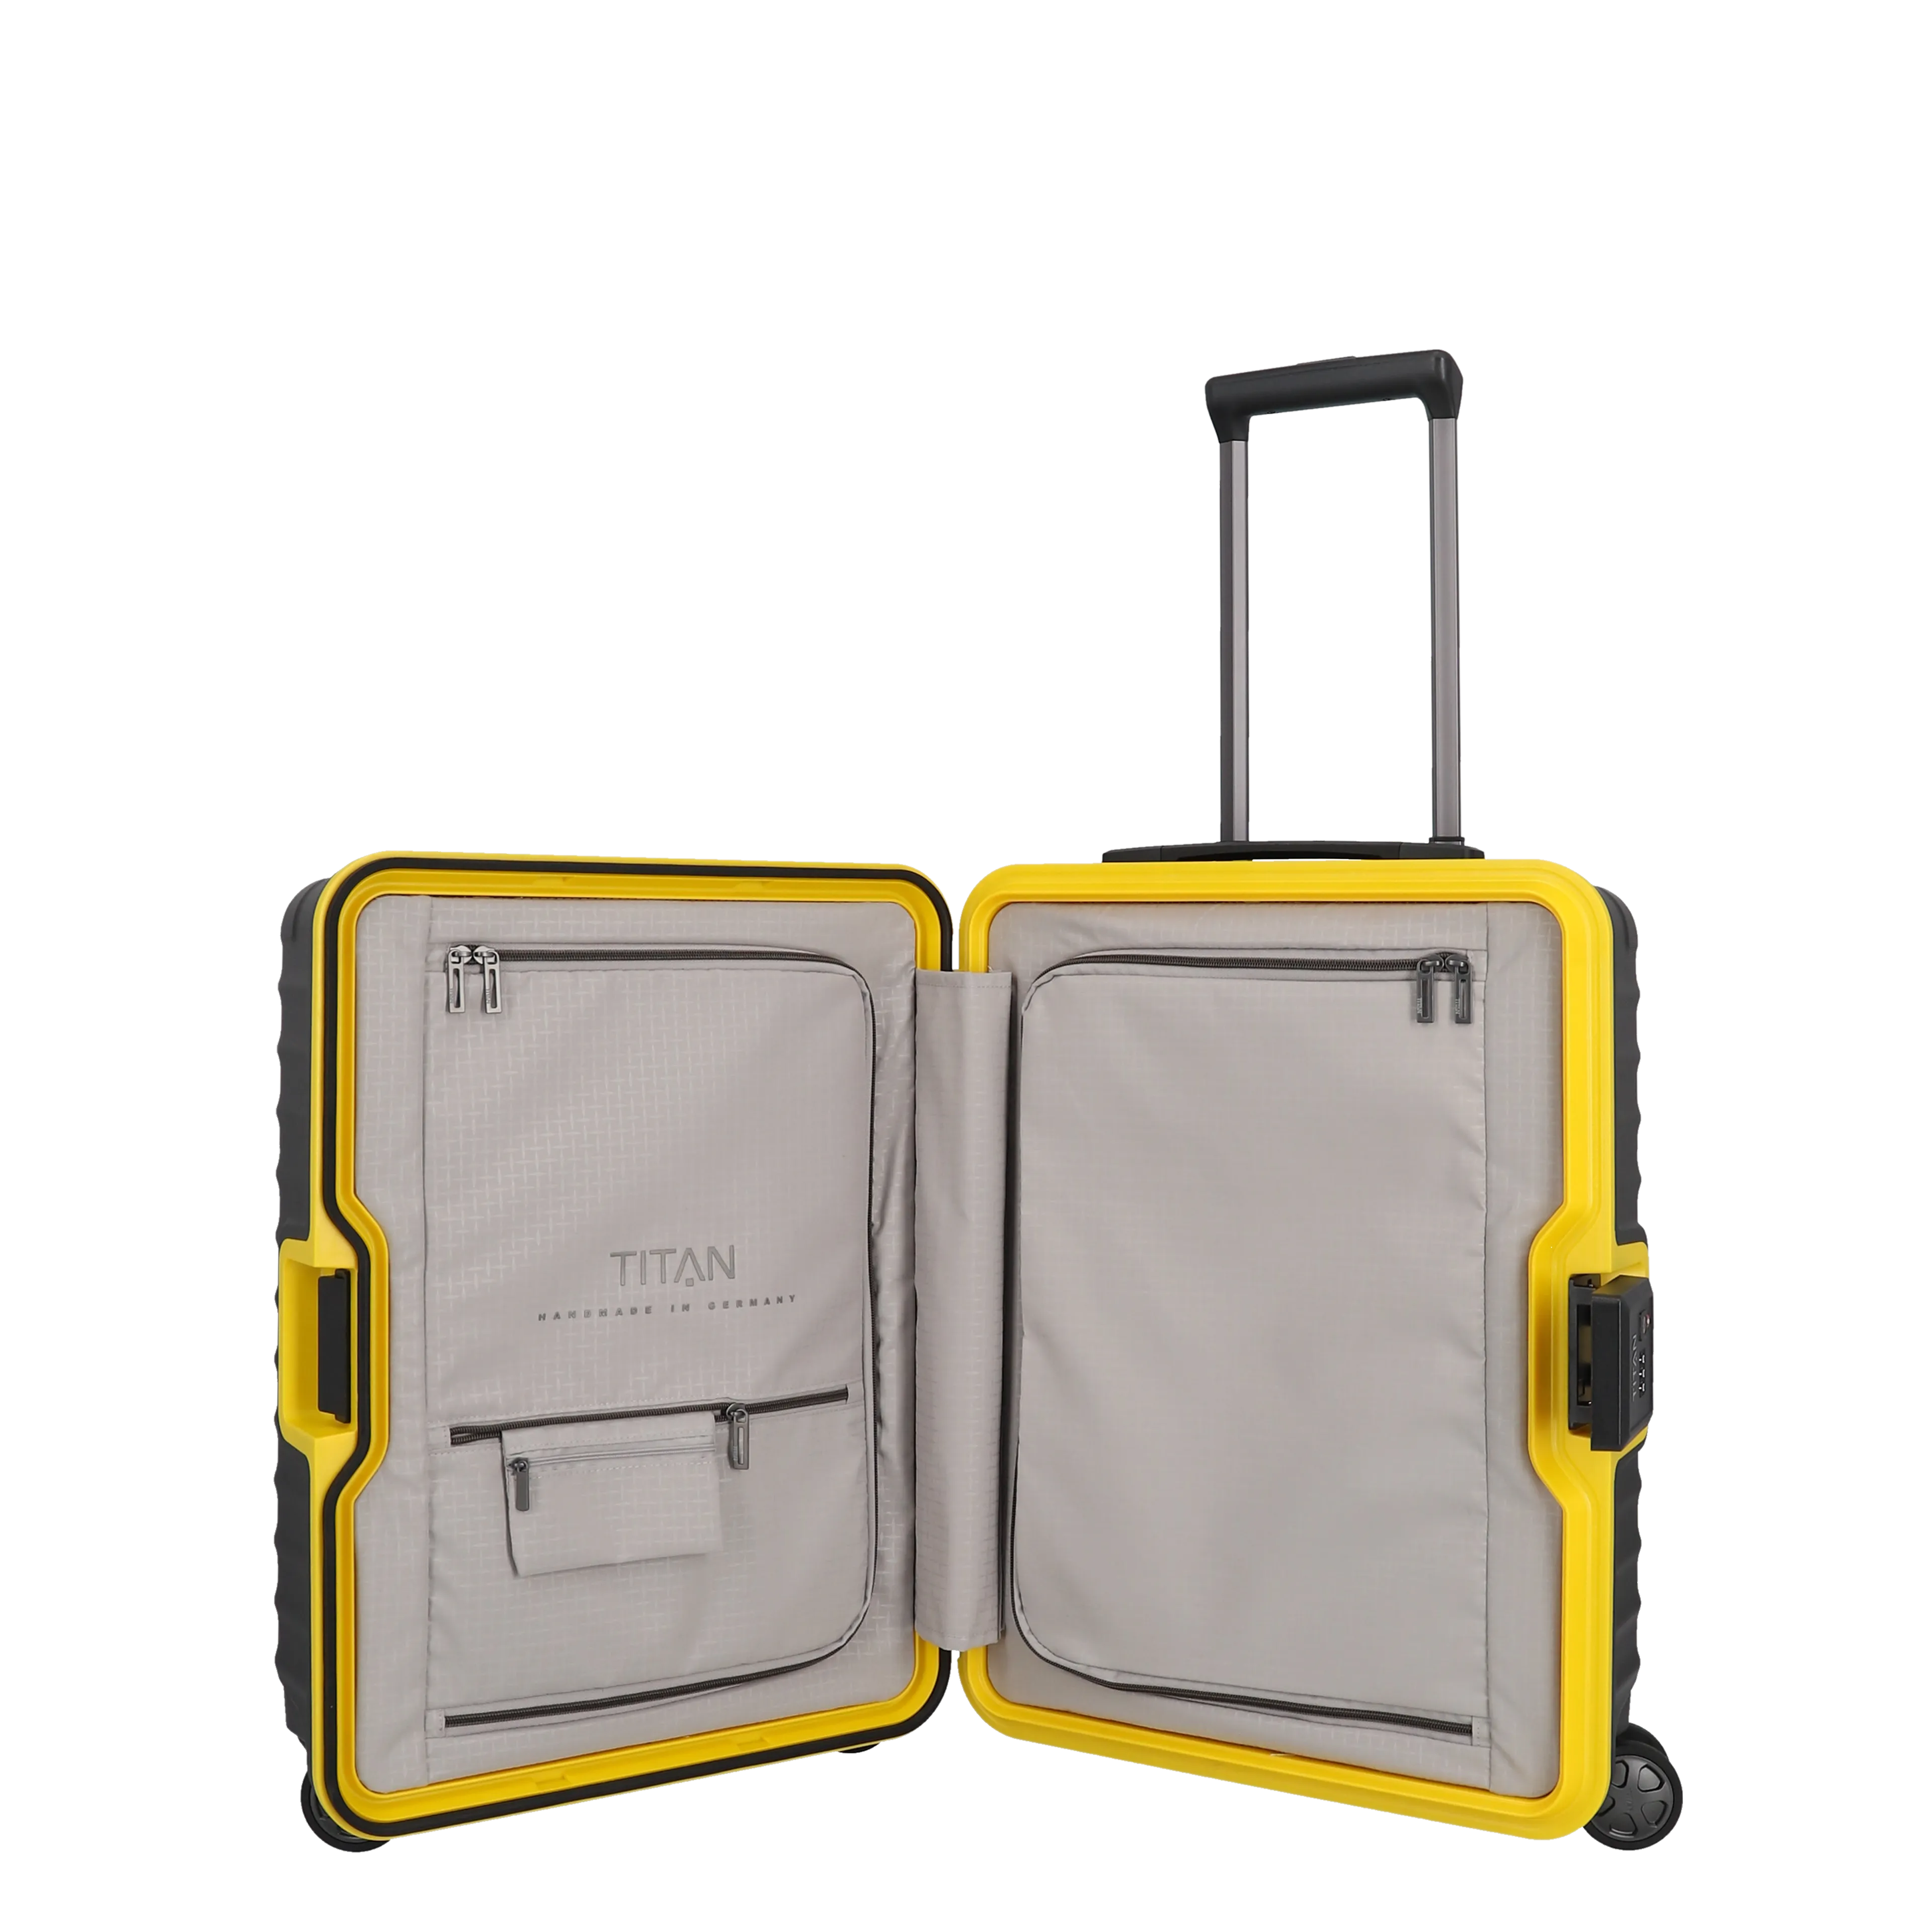 Ein TITAN Koffer der Serie LITRON Frame BVB Edition Innenansicht in schwarz/gelb Größe S 55cm